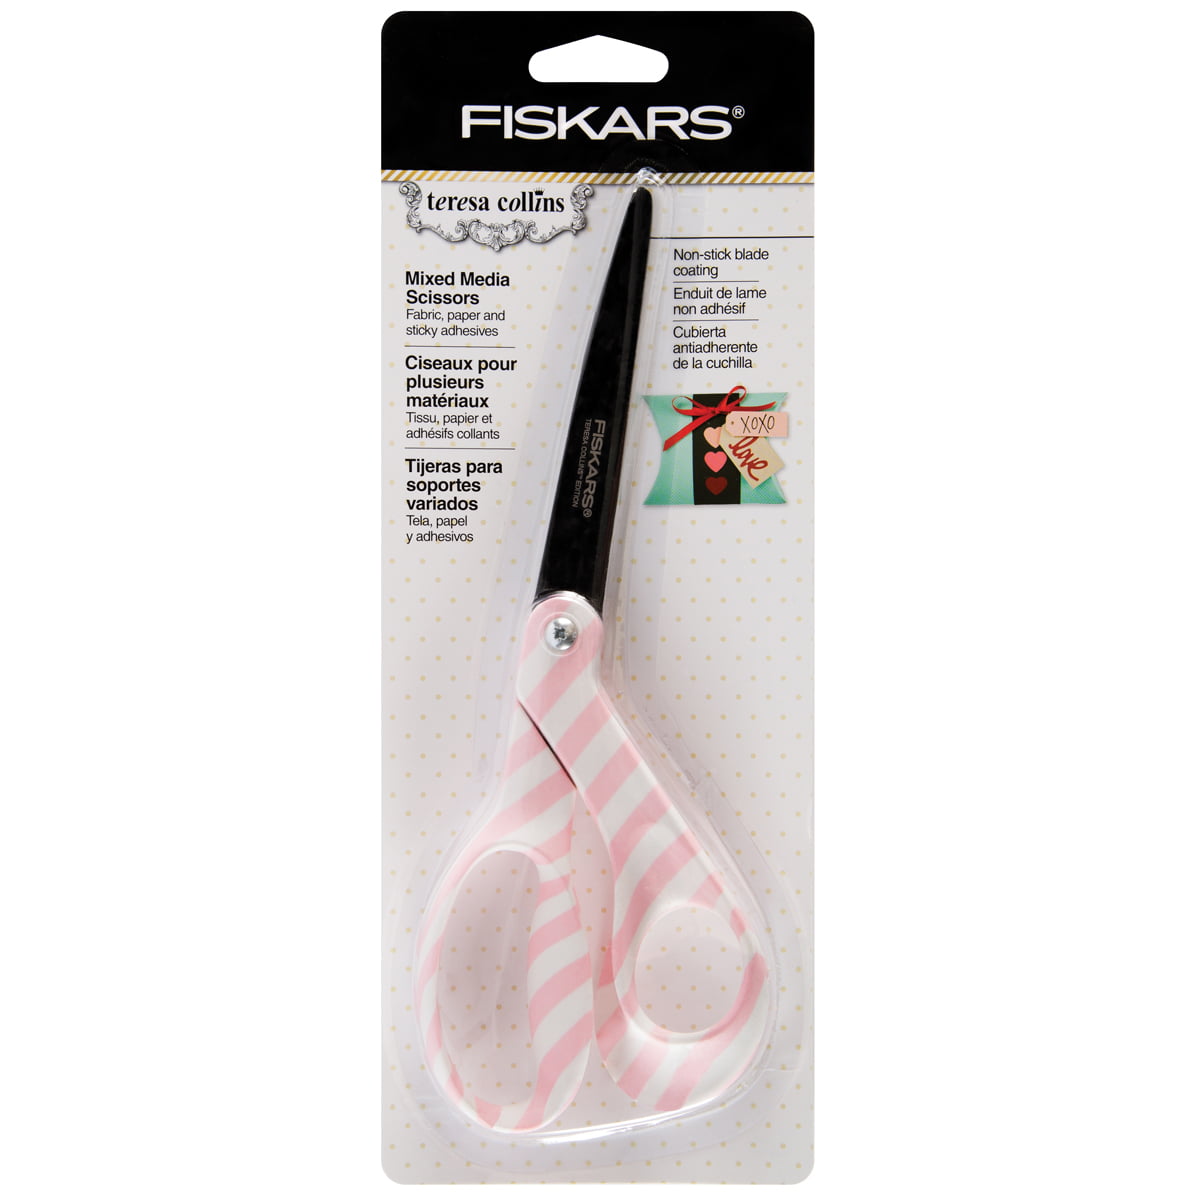 Fiskars Mixed Media 8” Scissors - Gray